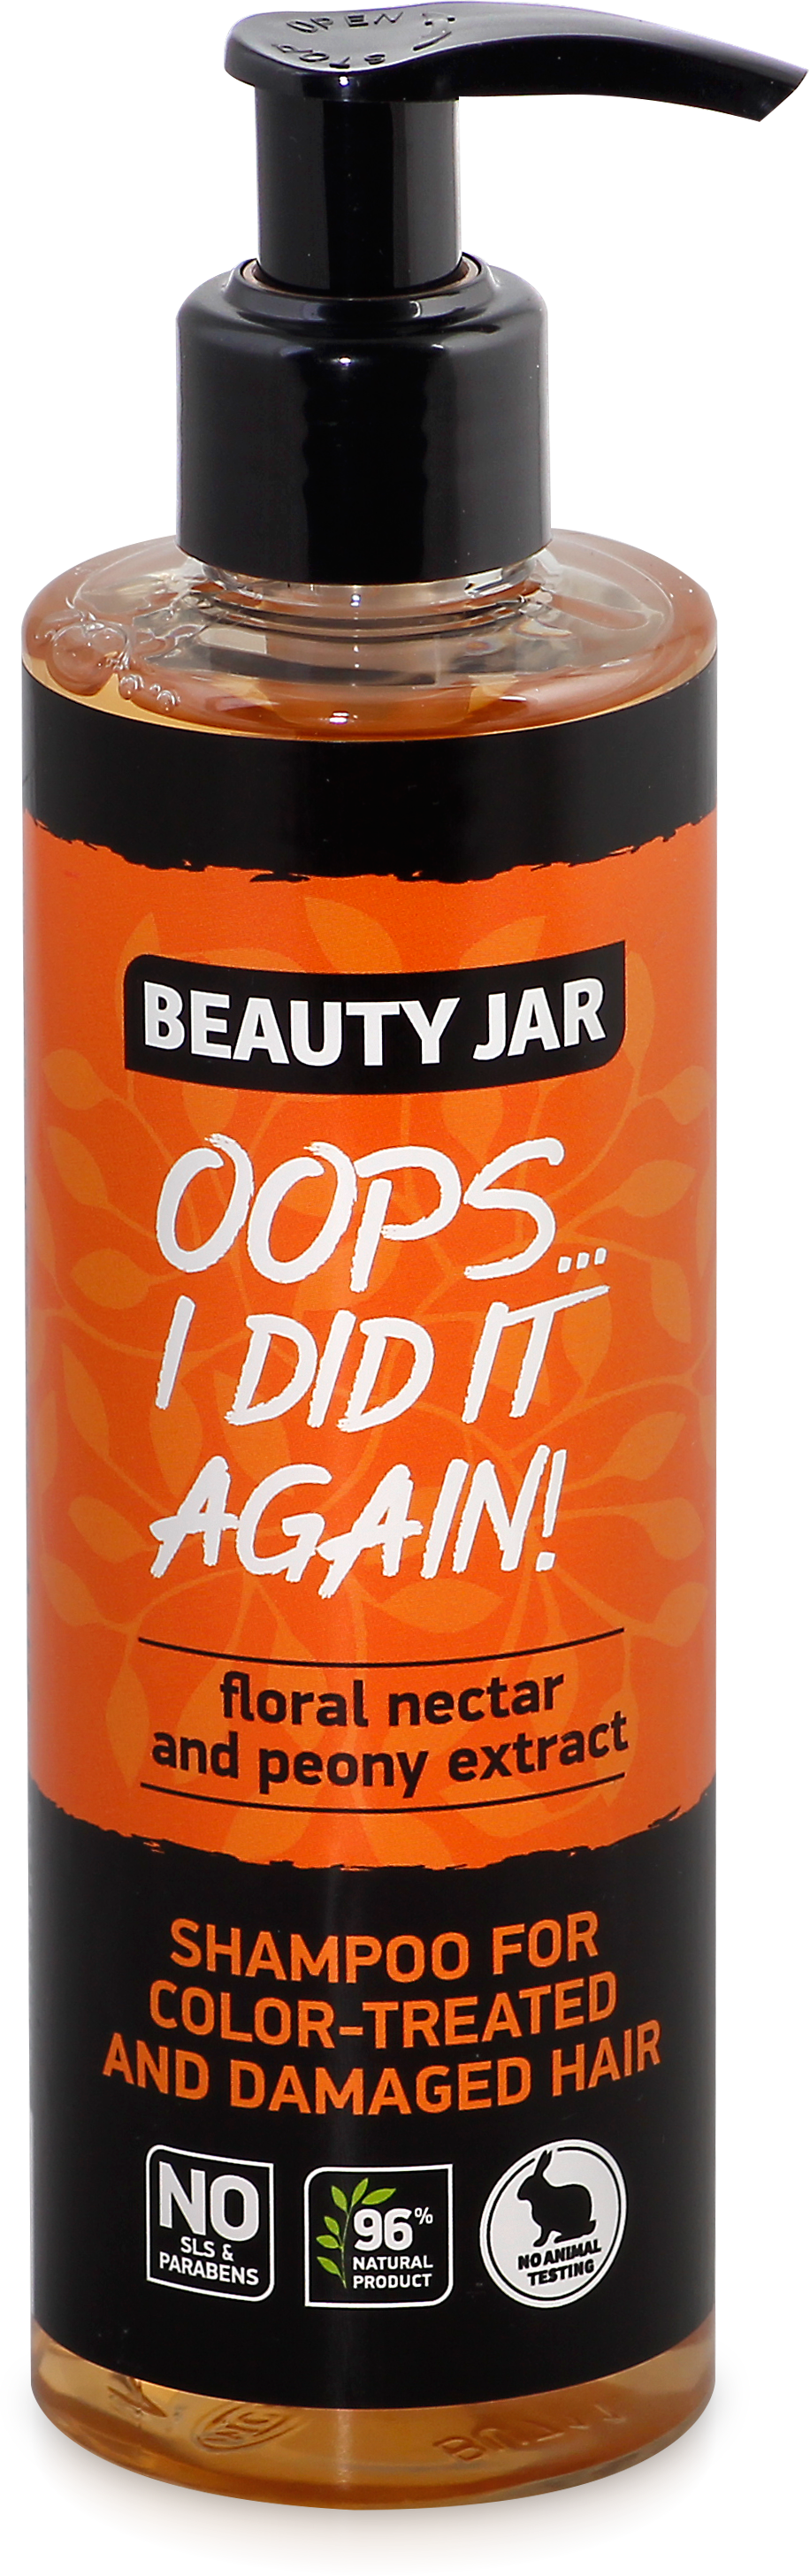 Шампунь Beauty Jar Oops...i did it again, для фарбованого та пошкодженого волосся, 250 мл - фото 1